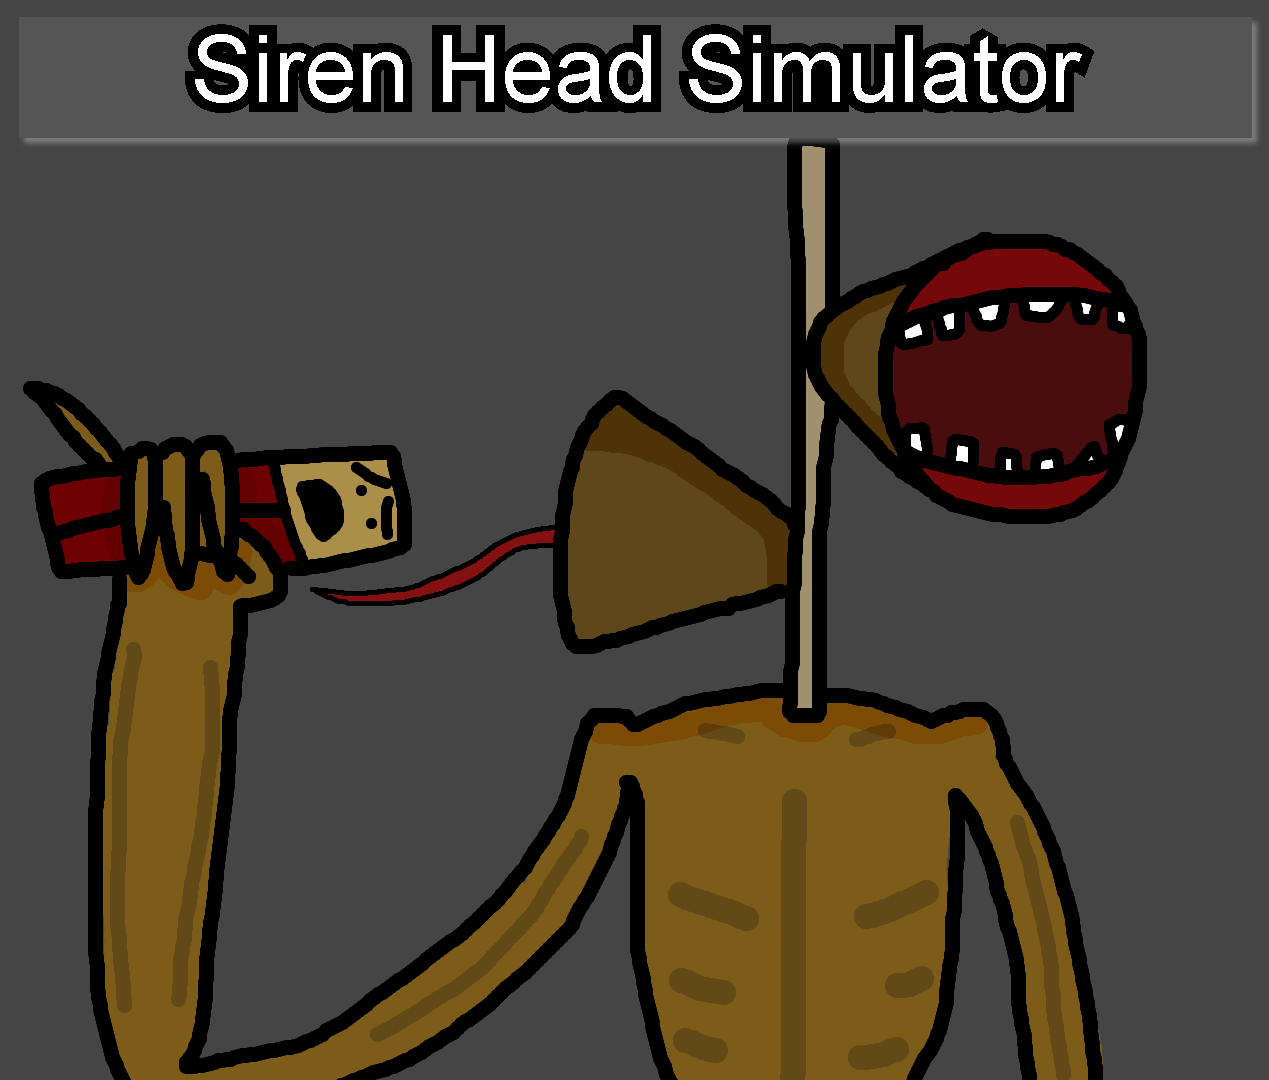 The siren head steam фото 48